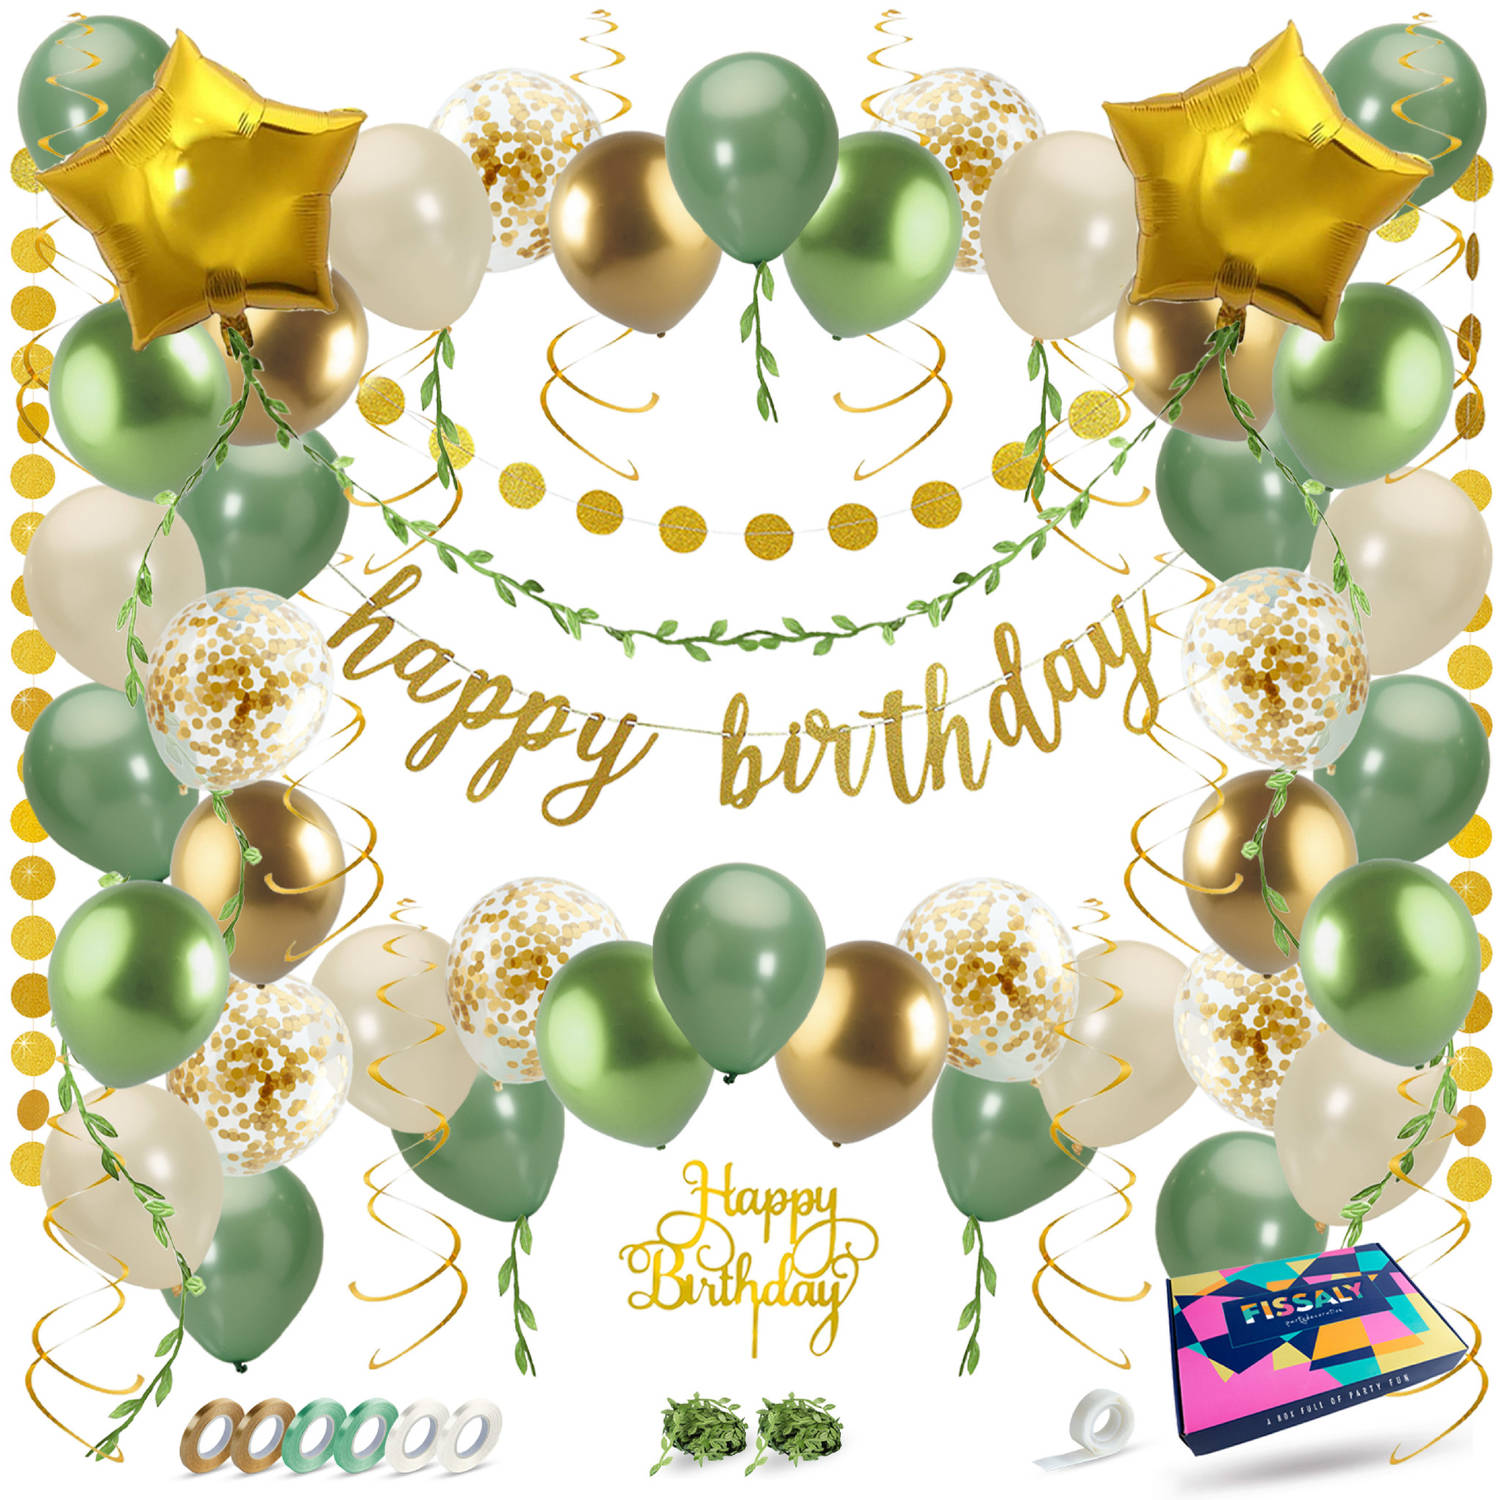 Fissaly® Happy Birthday Verjaardag Feestpakket Groen, Goud & Beige met Papieren Confetti Ballonnen – Decoratie Versiering